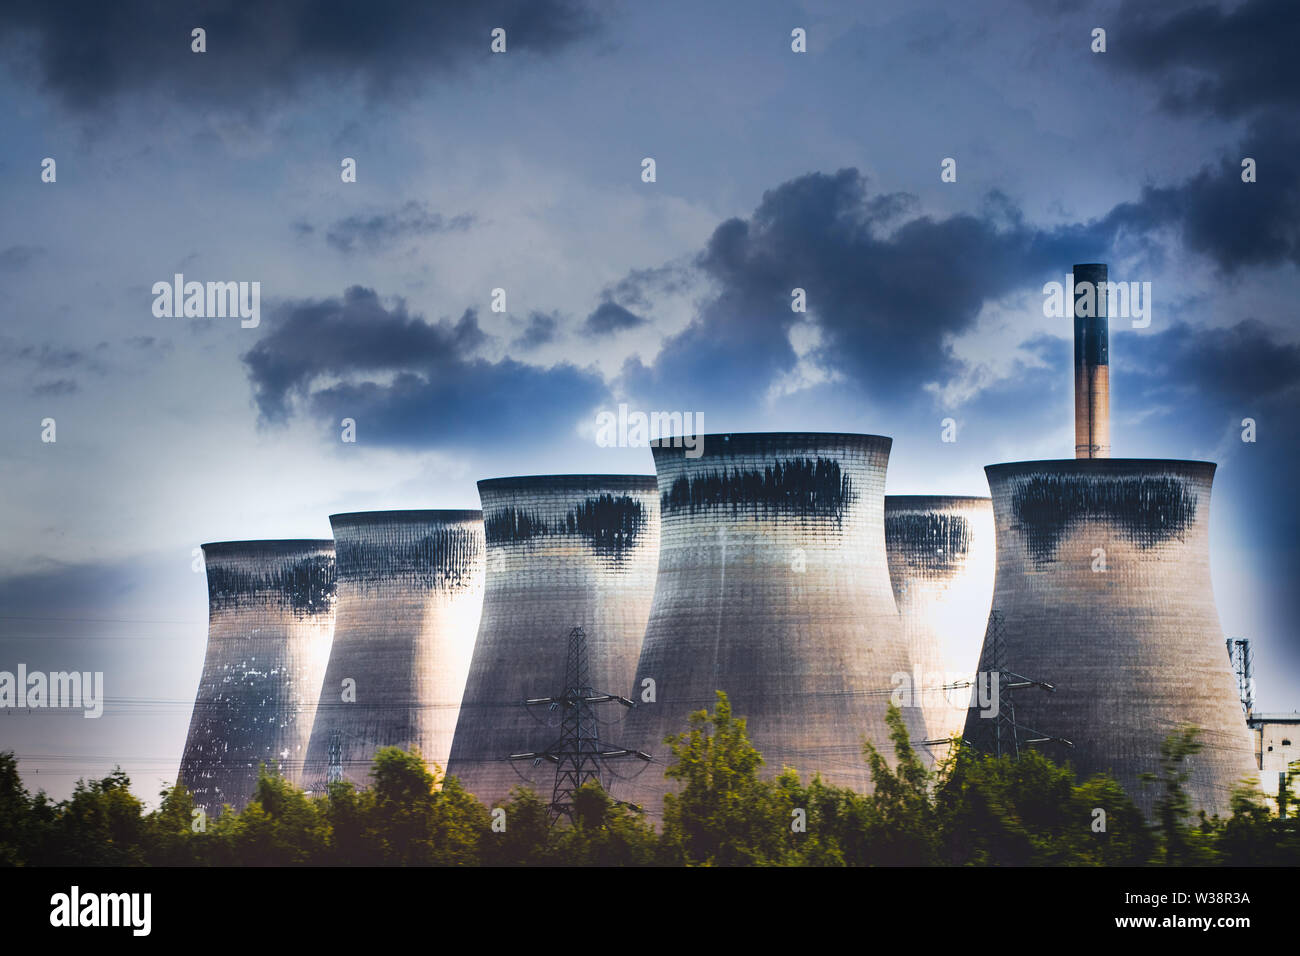 Les cheminées de la centrale électrique de l'énergie et des tours de refroidissement avec ciel dramatique. Pollution de l'air montrant les concepts de changement climatique Le réchauffement de la... Banque D'Images